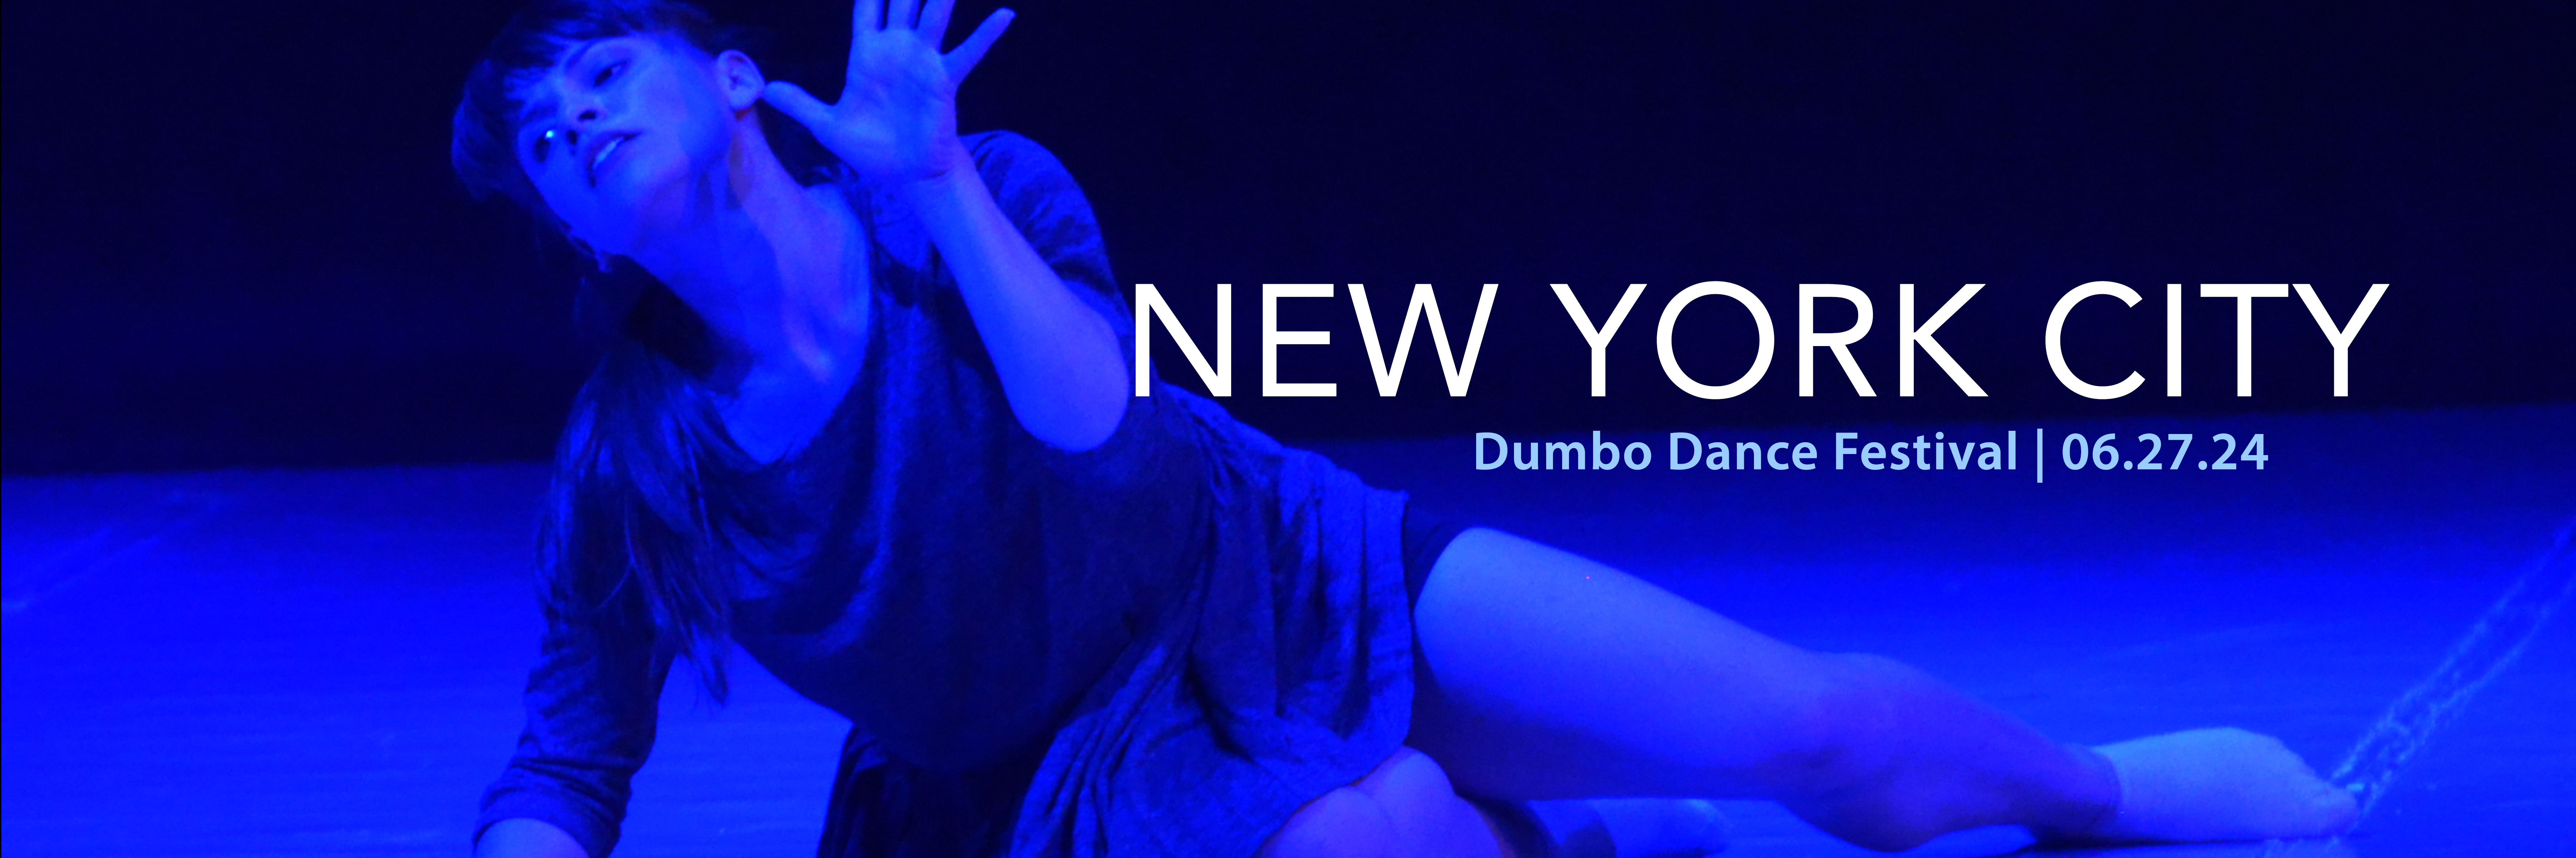 Dumbo Dance Festival, New York